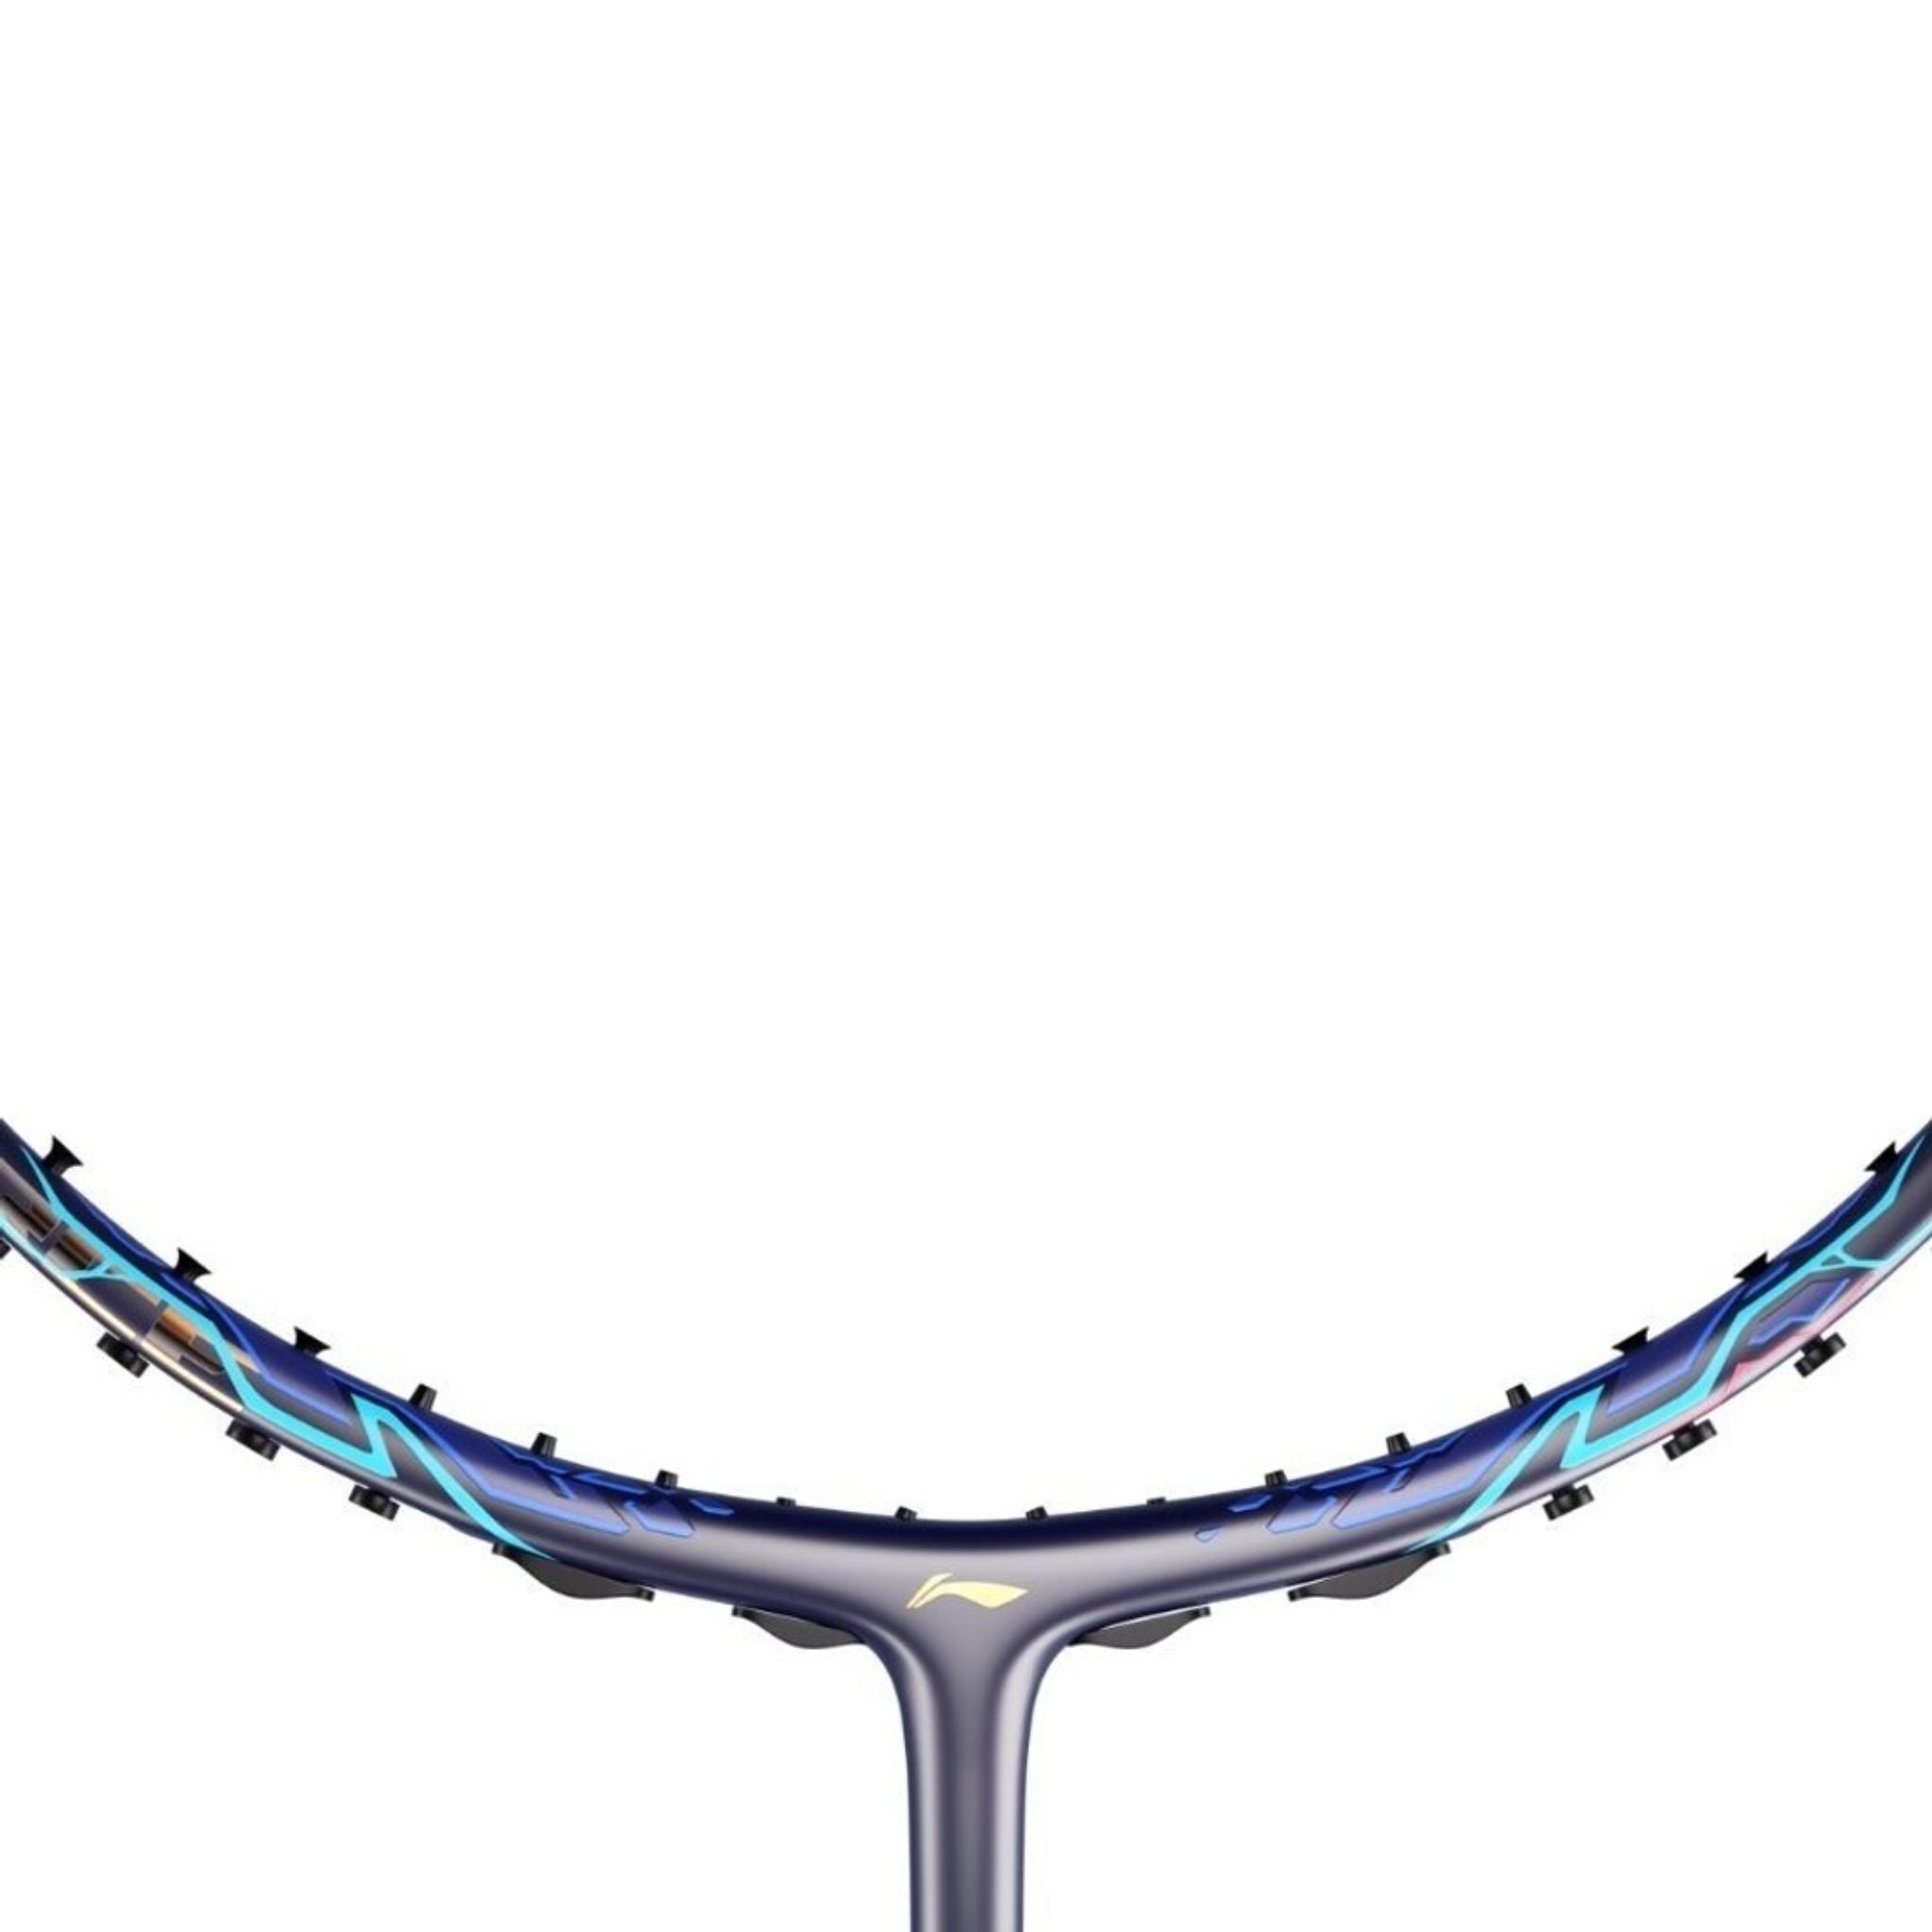 LI-NING AXFORCE 90 3U Dragon Max Badminton Racket